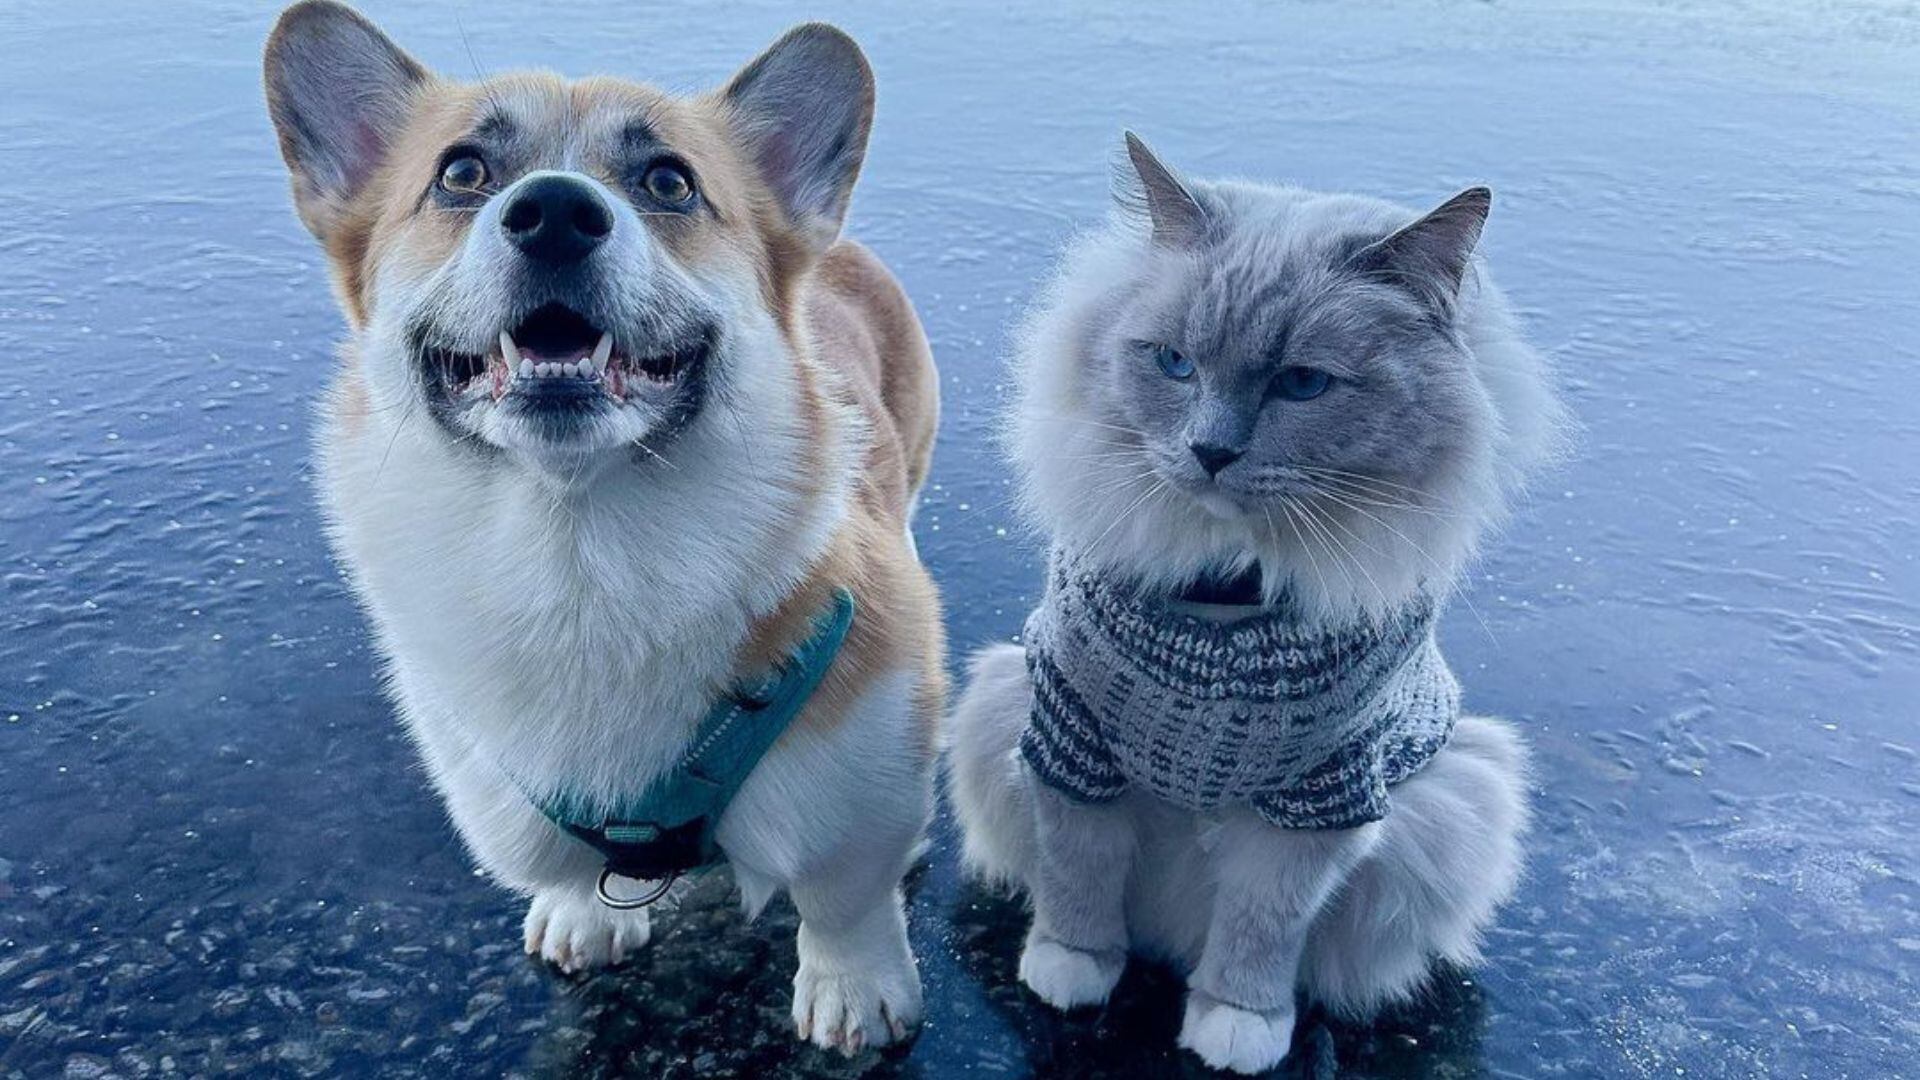 Cómo un gato solitario y un perro alegre aprendieron a compartir el amor de su dueña (Instagram lordaddereminus)